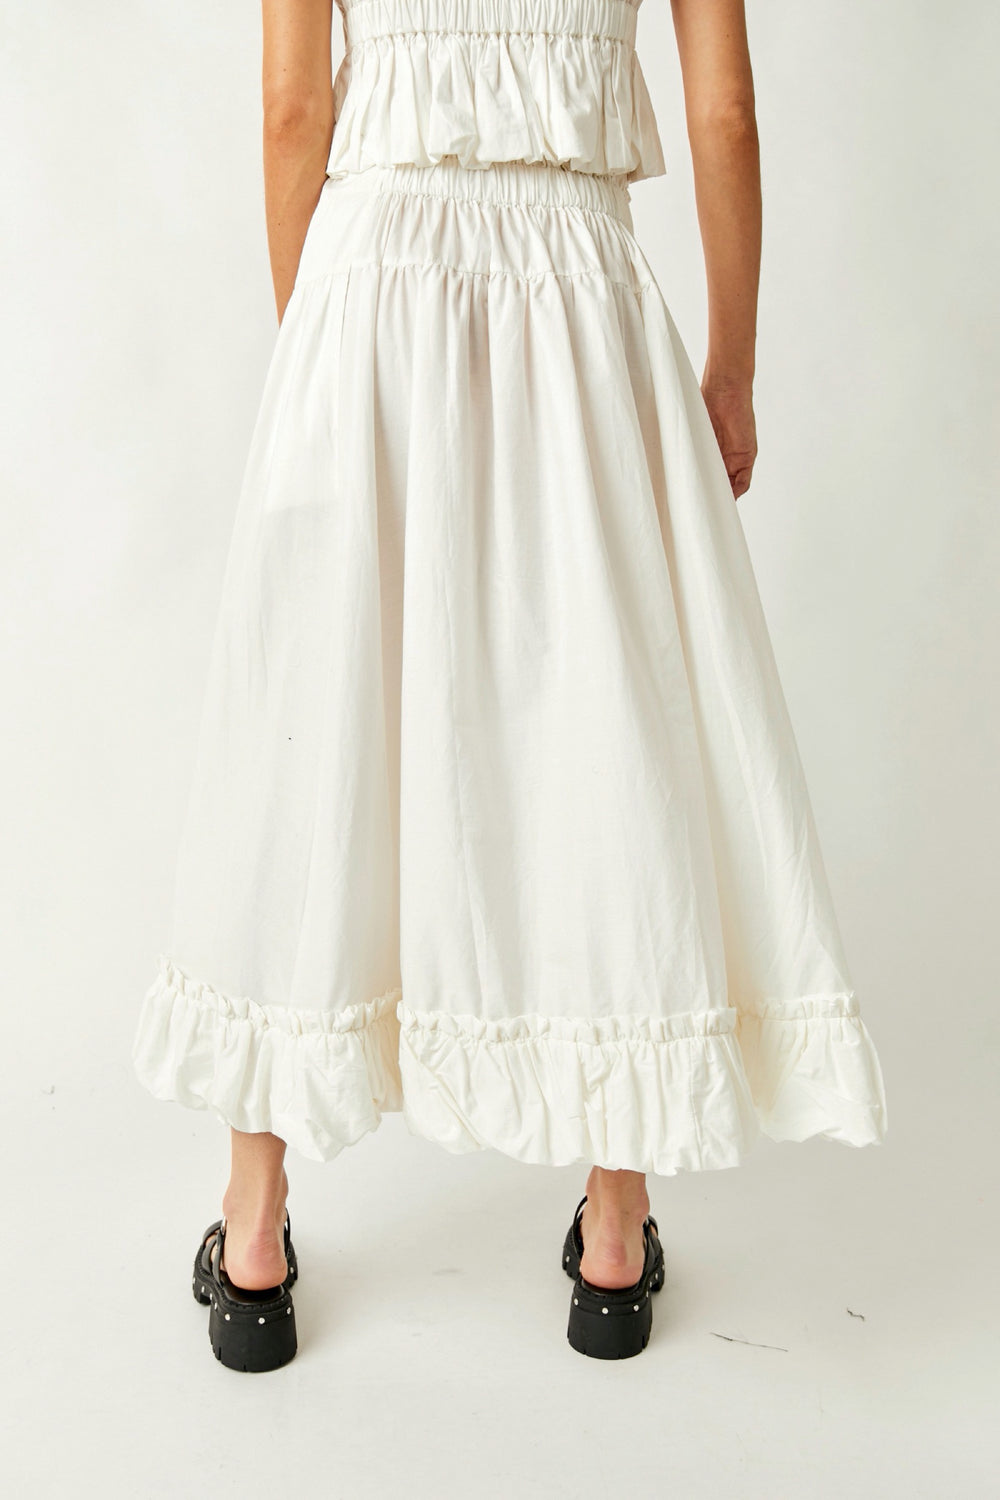 White Favorite Part Midi Skirt